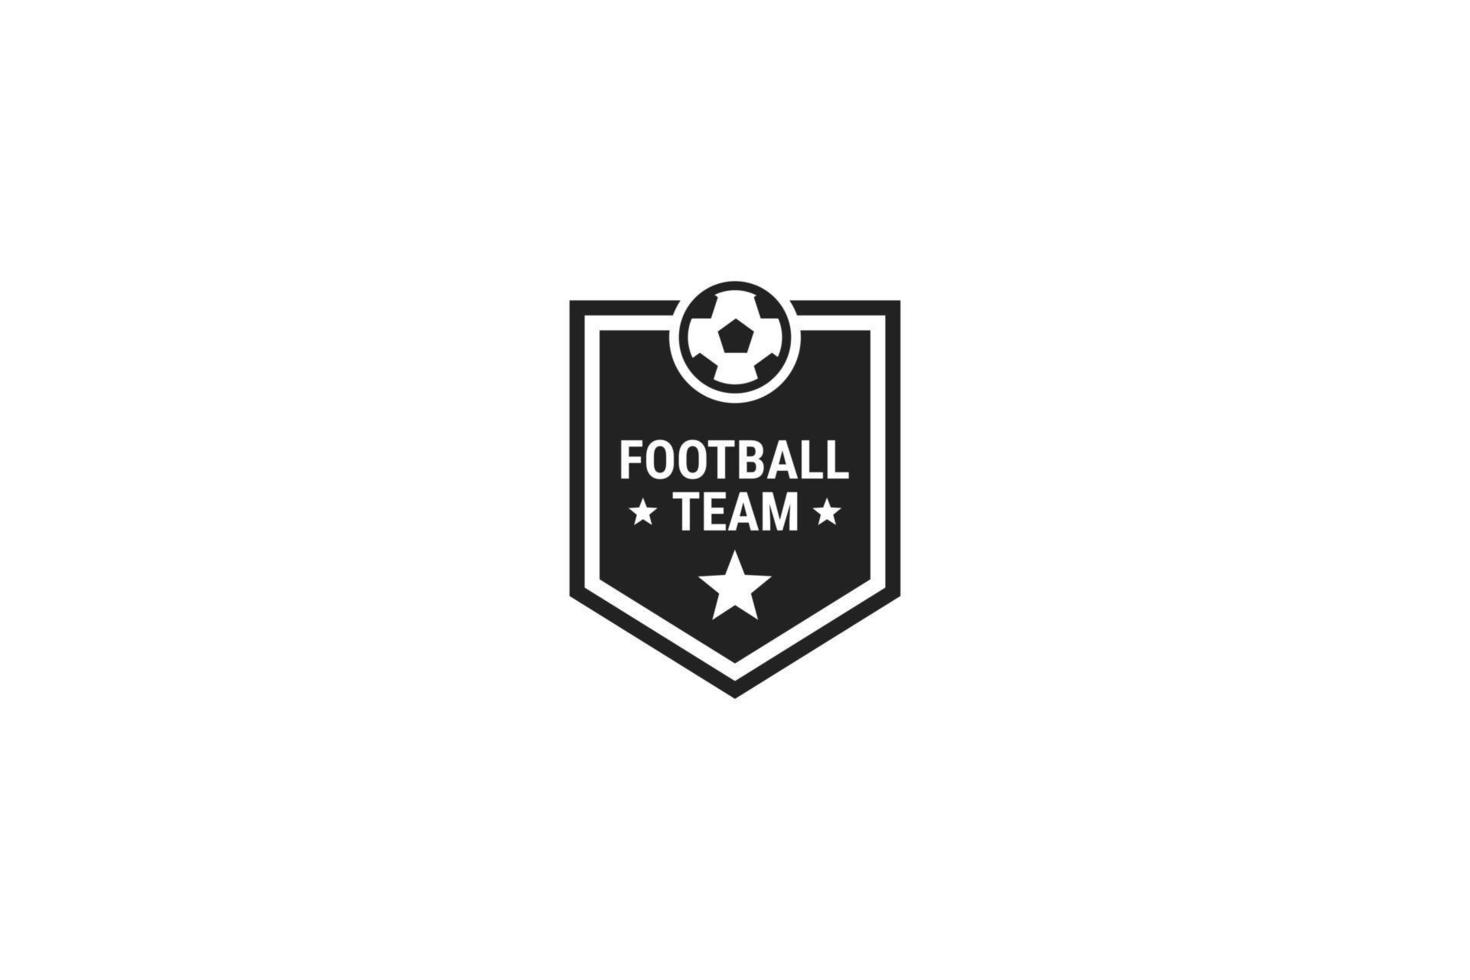 Flat soccer football logo design illustration idea vector